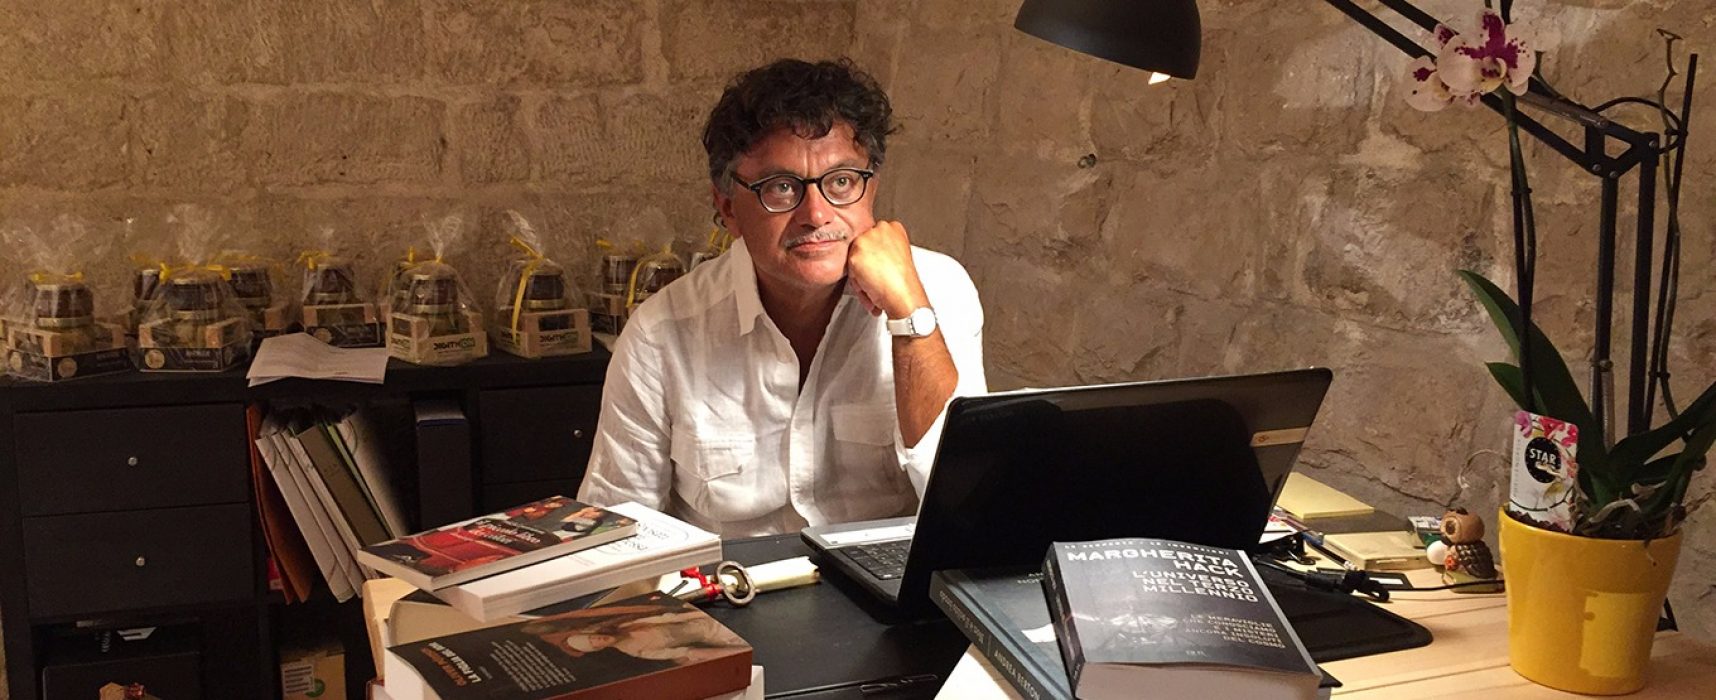 Veneziani inaugura il suo studio nel bookstore Mondadori delle Vecchie Segherie / VIDEO